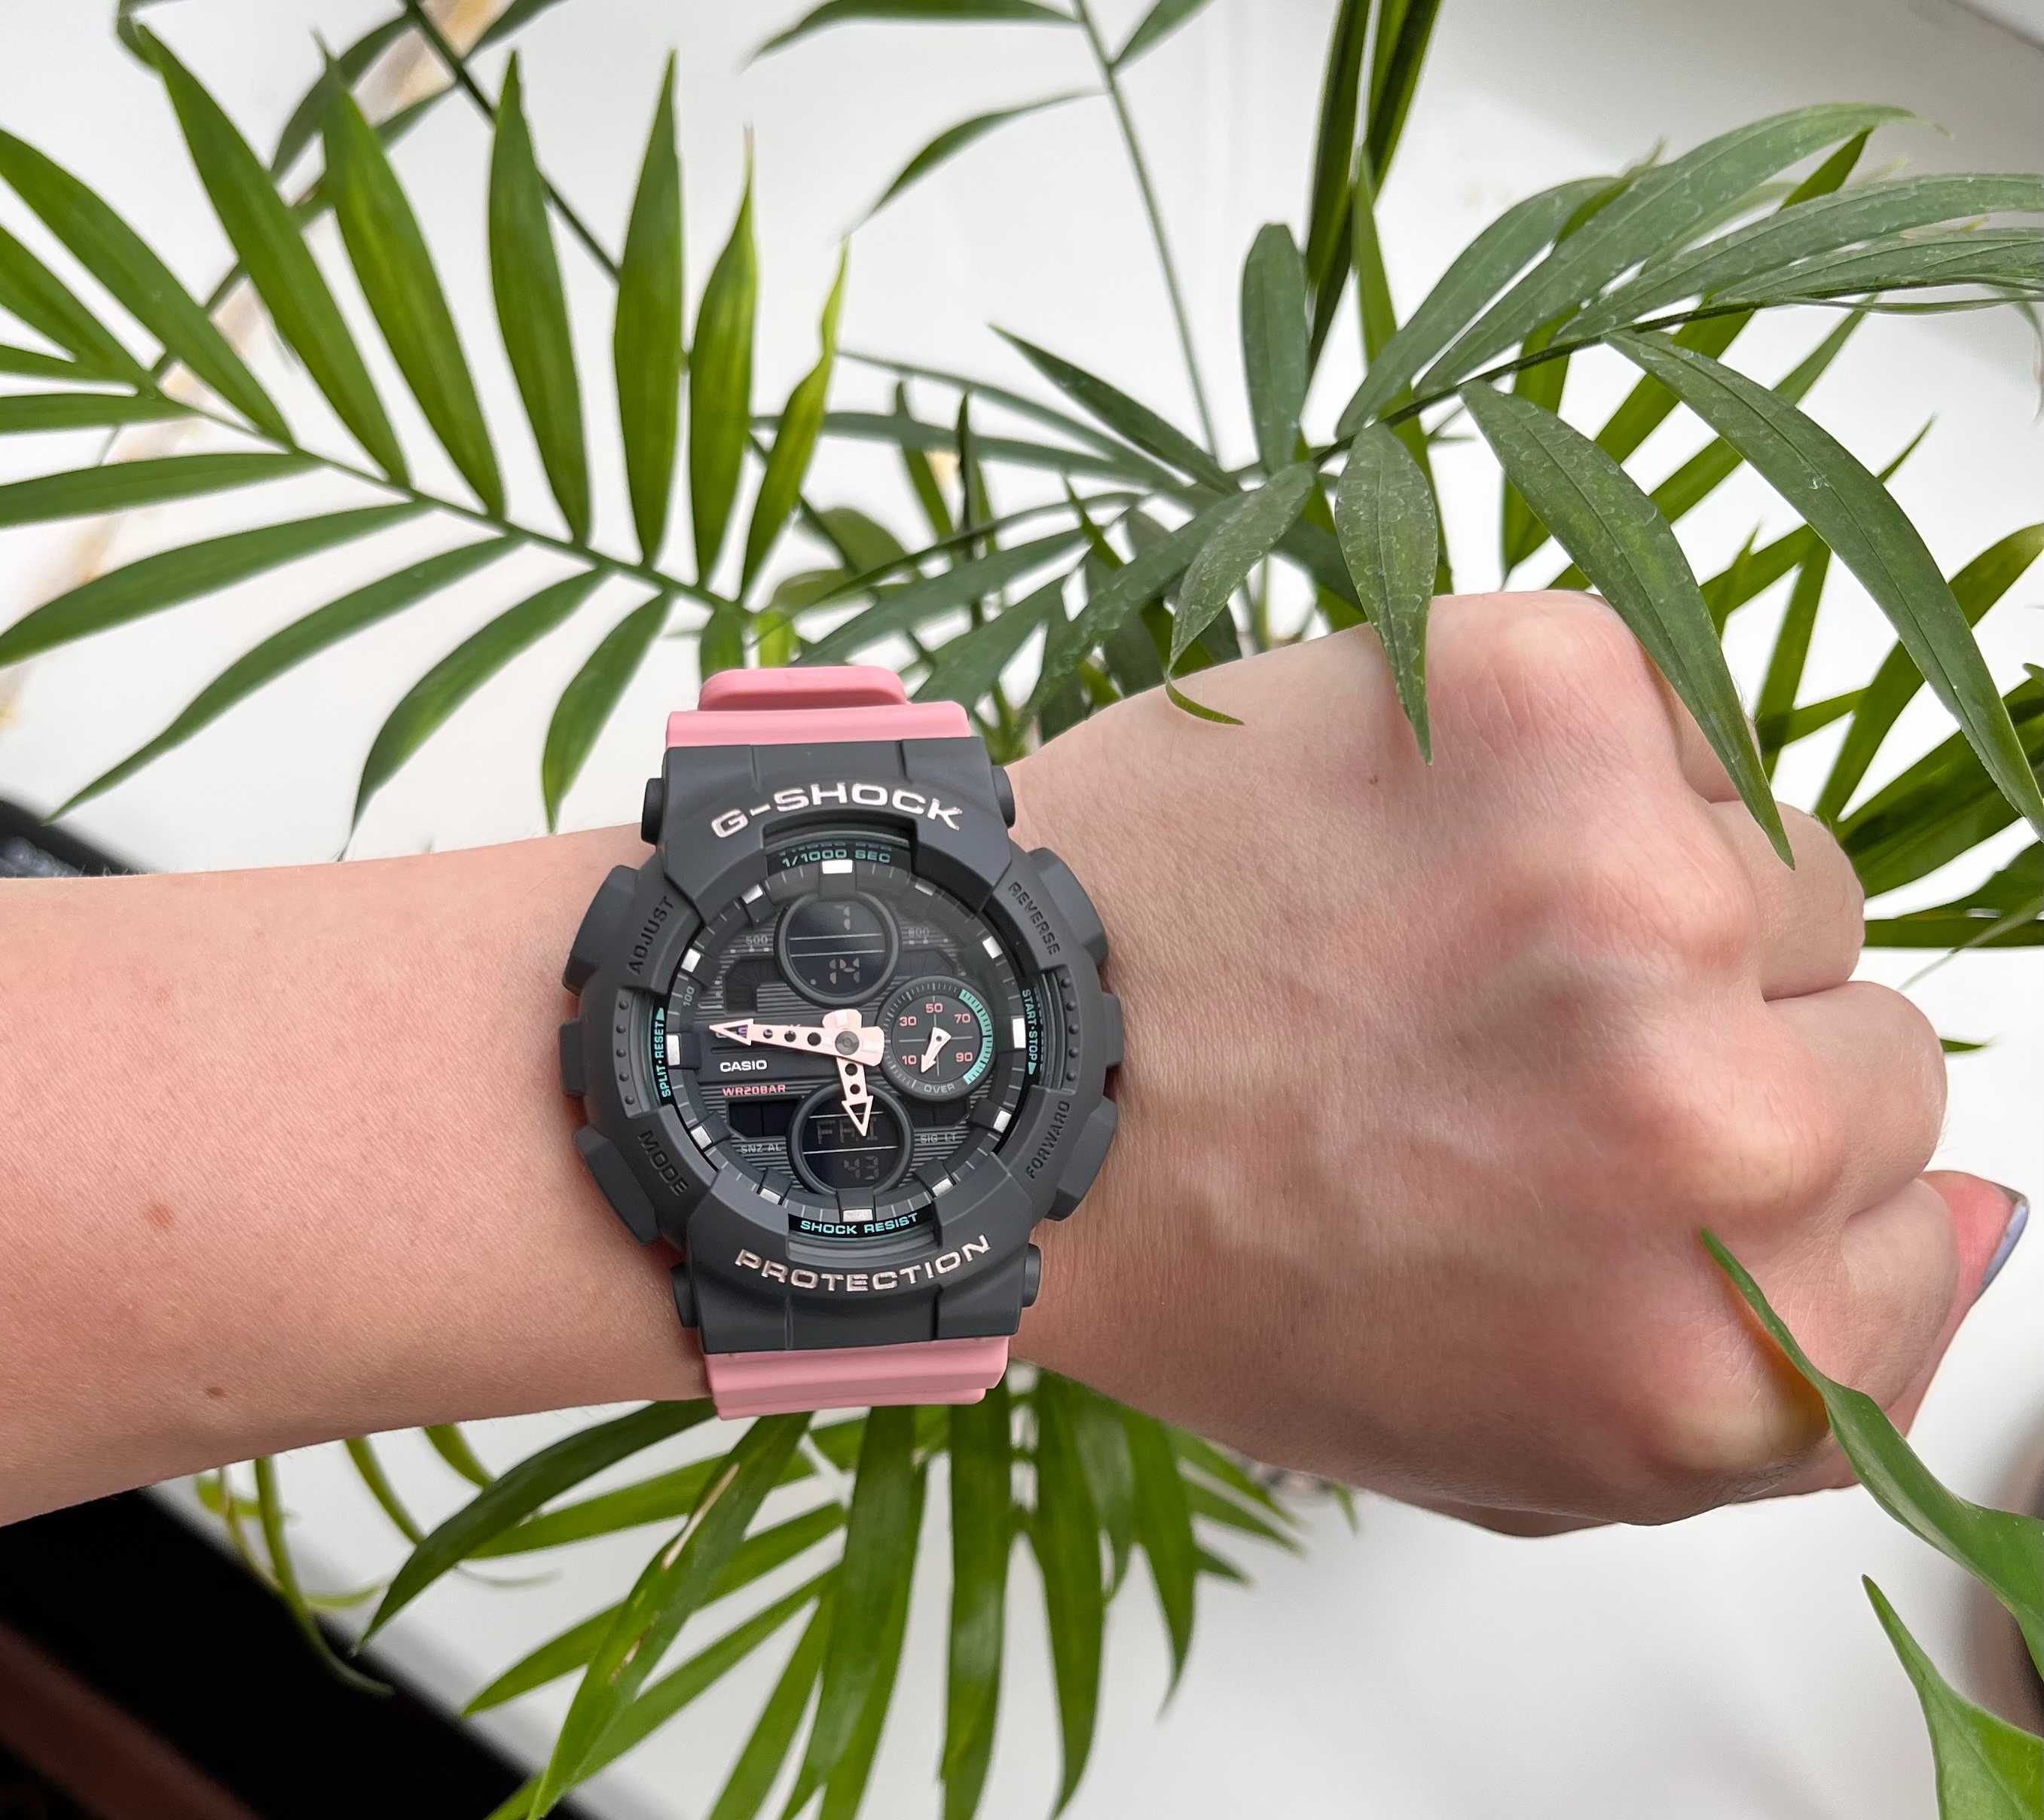 годинник Casio GMA-S140-4A g-shock часы женские джи шок Ø46мм